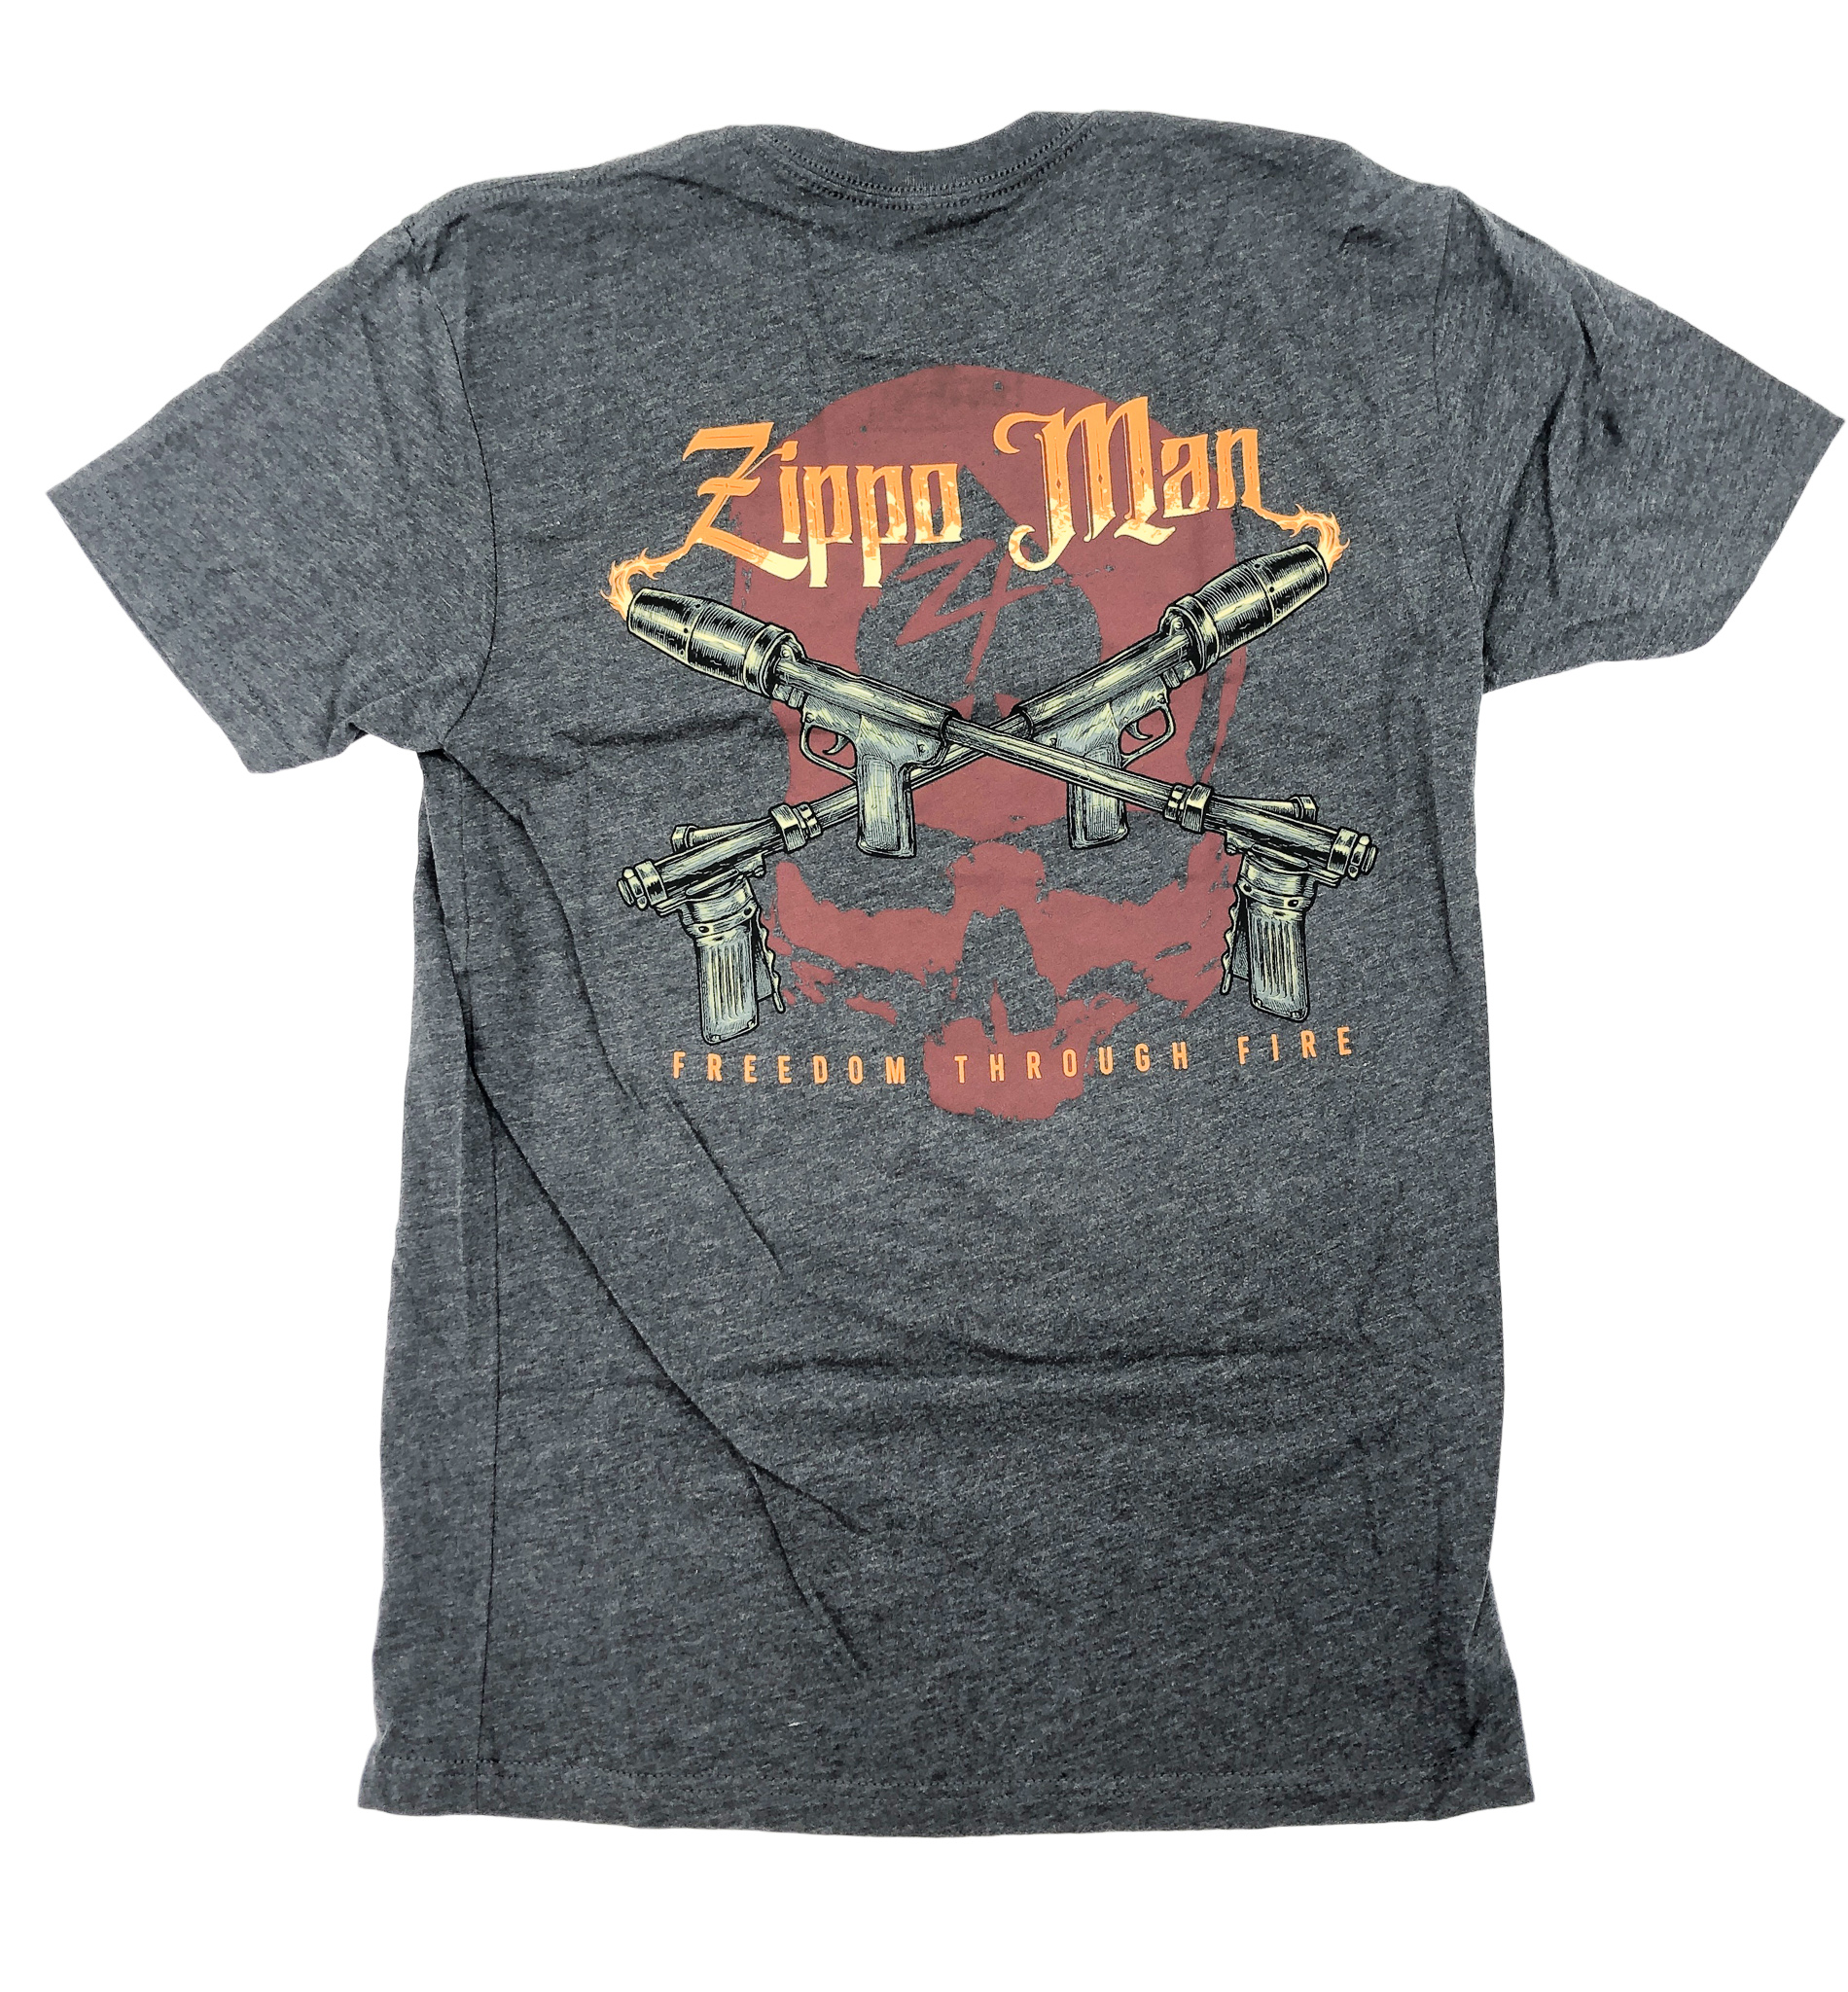 ZF-Tshirt_zippo man